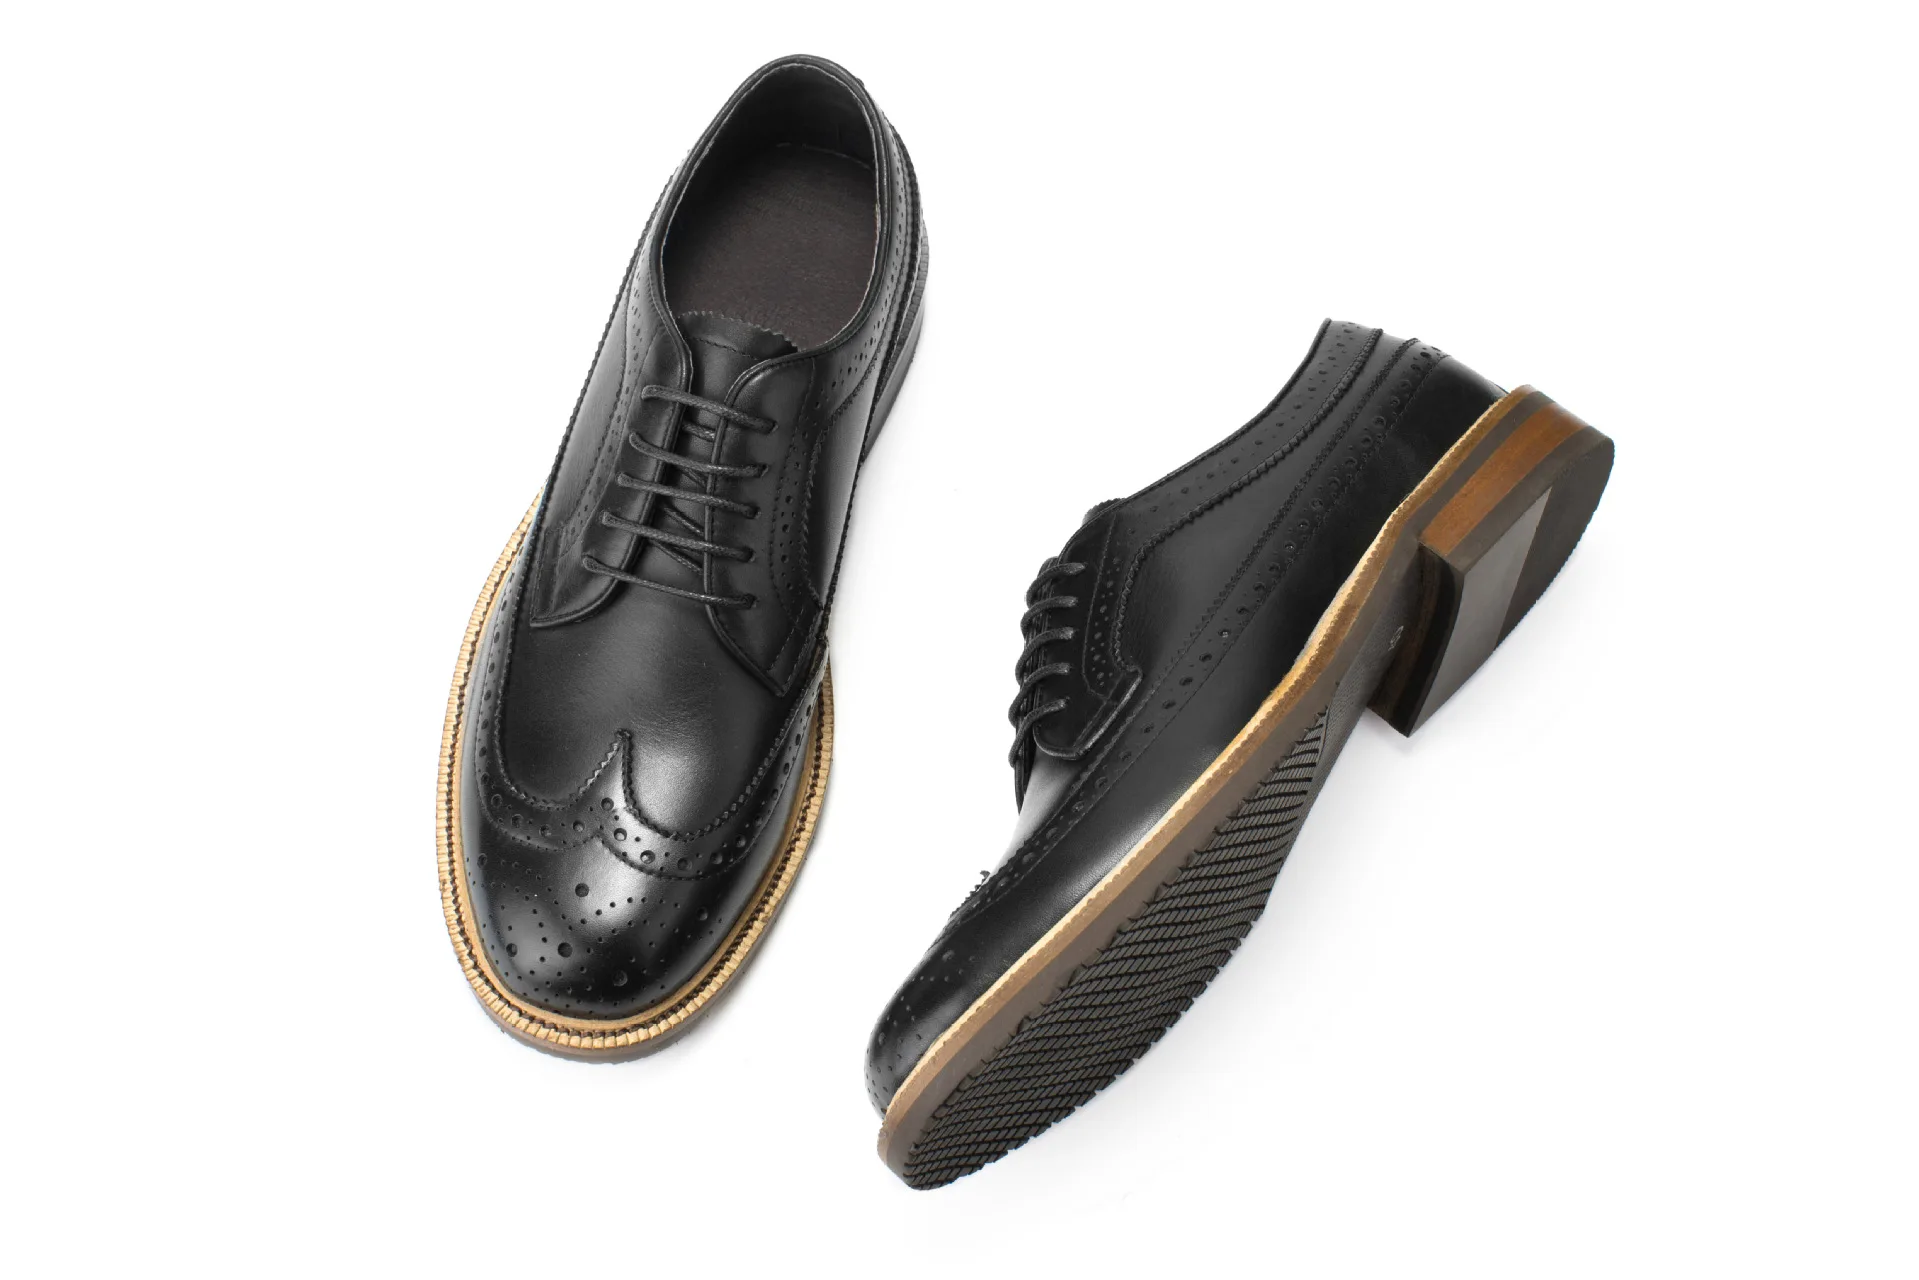 QYFCIOUFU/ г., винтажная Мужская обувь с перфорацией типа «броги», туфли-оксфорды из натуральной коровьей кожи, на шнуровке, формальные высококачественные модные мужские модельные туфли